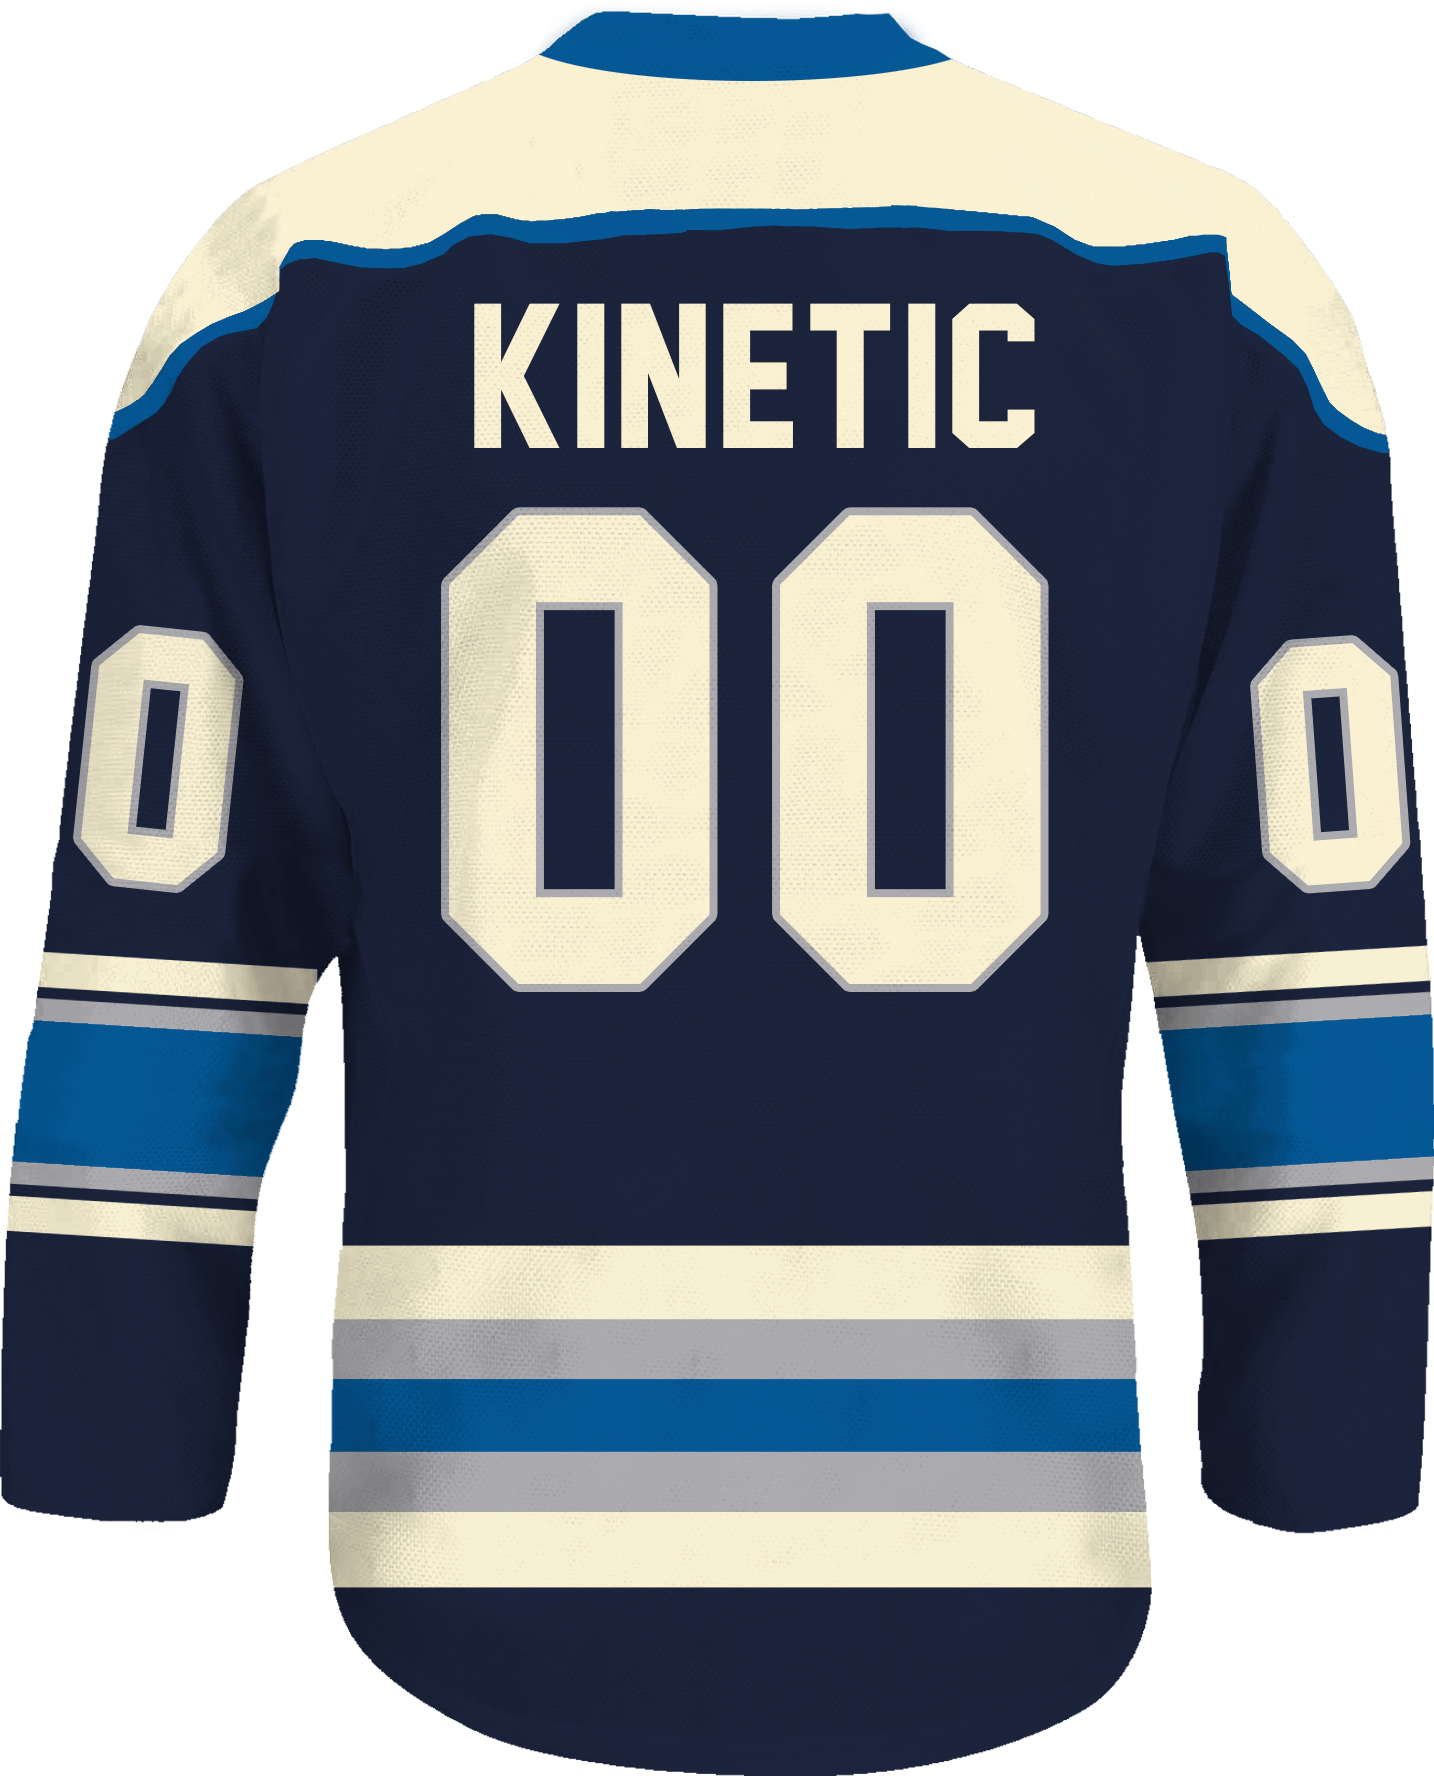 Kappa Sigma - Blue Cream Hockey Jersey - Kinetic Society